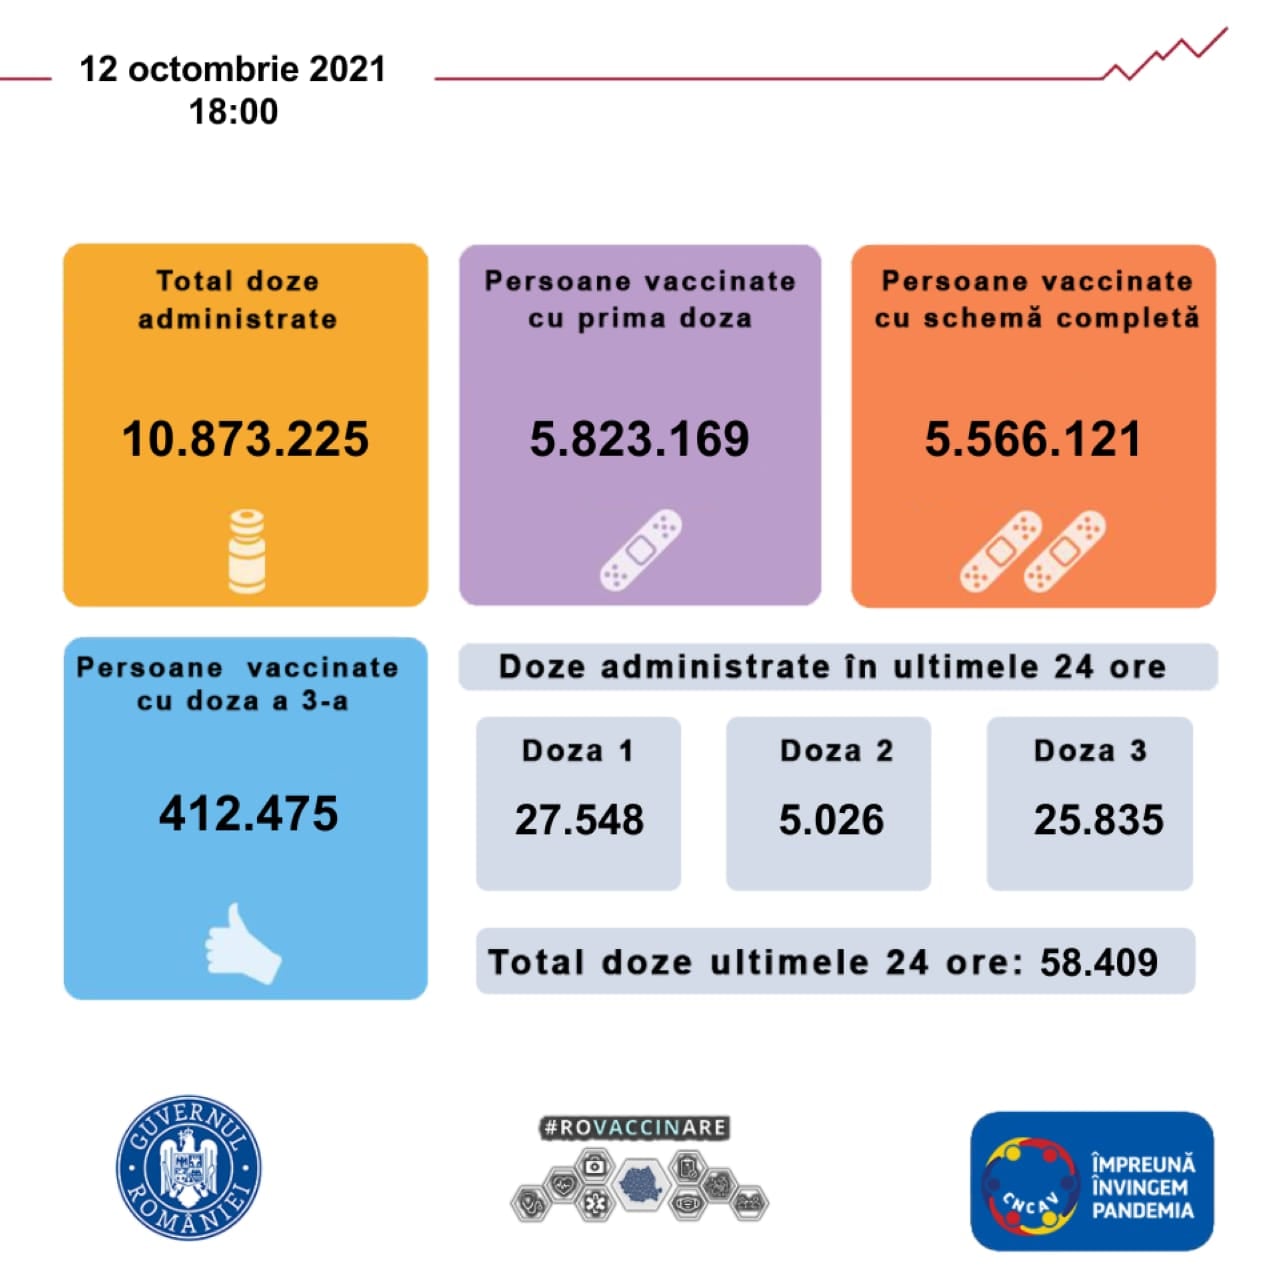 Regierung Rumäniens Bisher wurden im Land 5.8 Millionen Rumänen geimpft